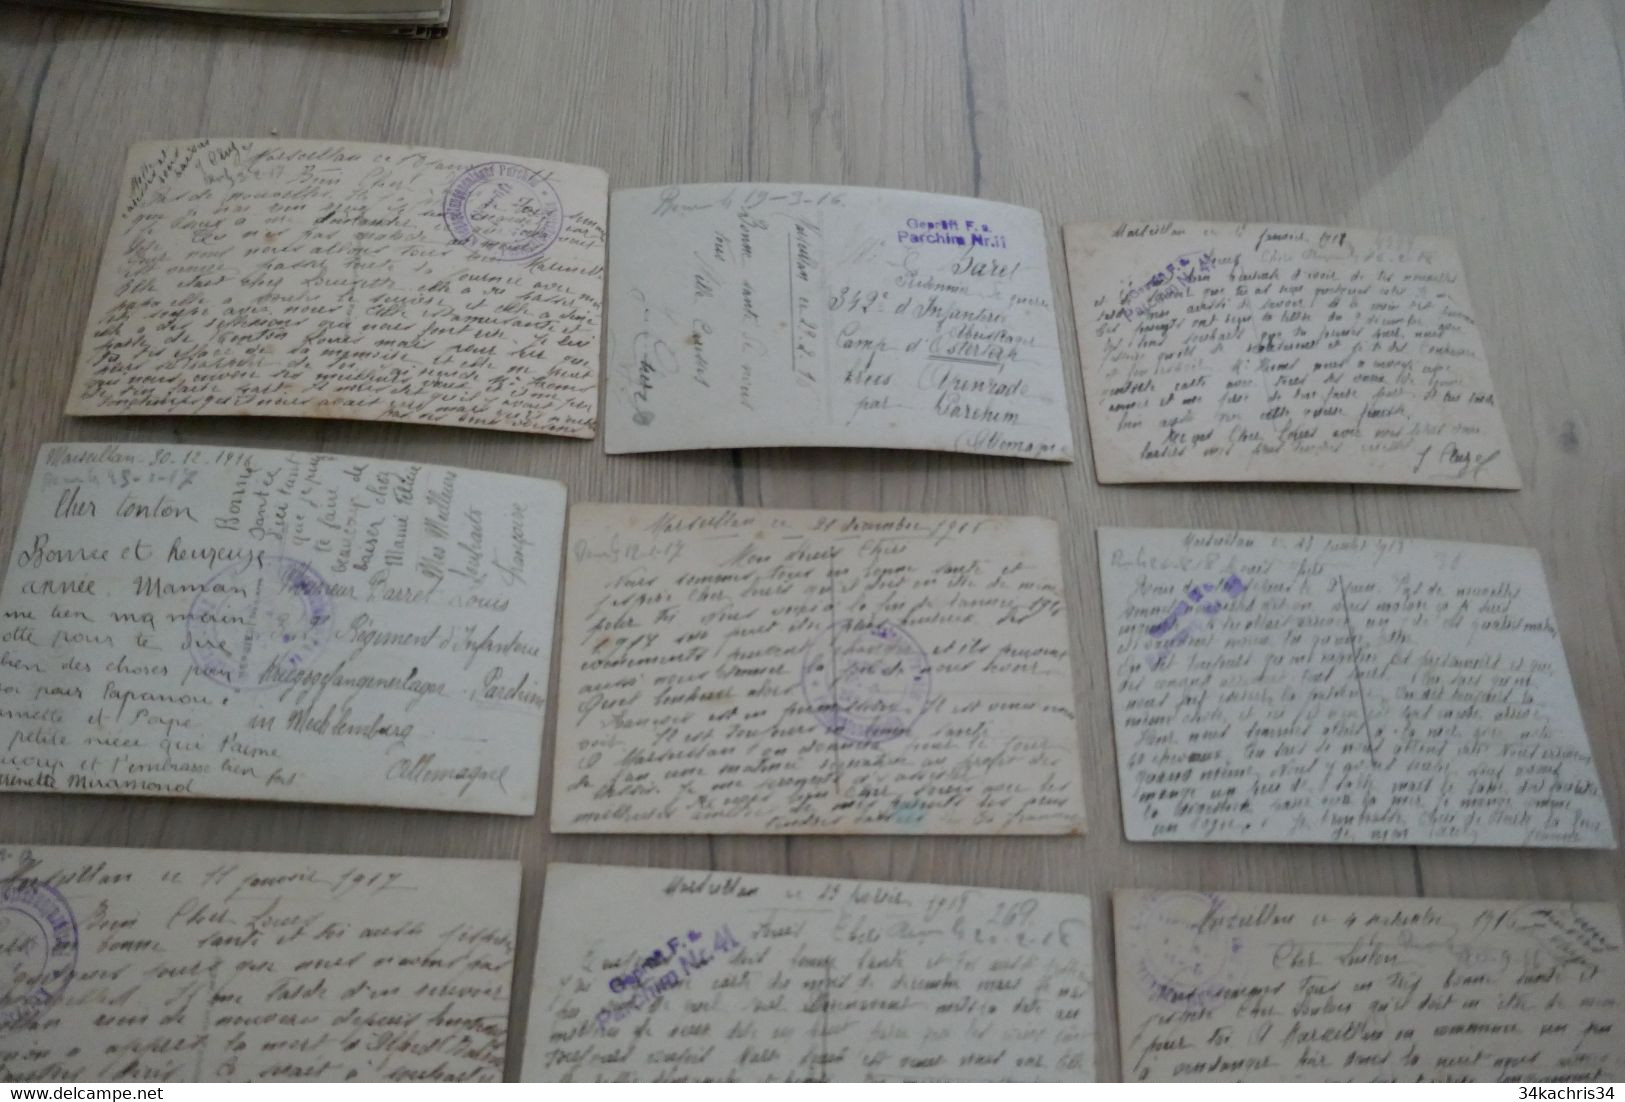 Marseillan 45 CPA  cachets militaires allemands de camps  texte Guerre de 14/18 récits nouvelles prisonniers de guerre